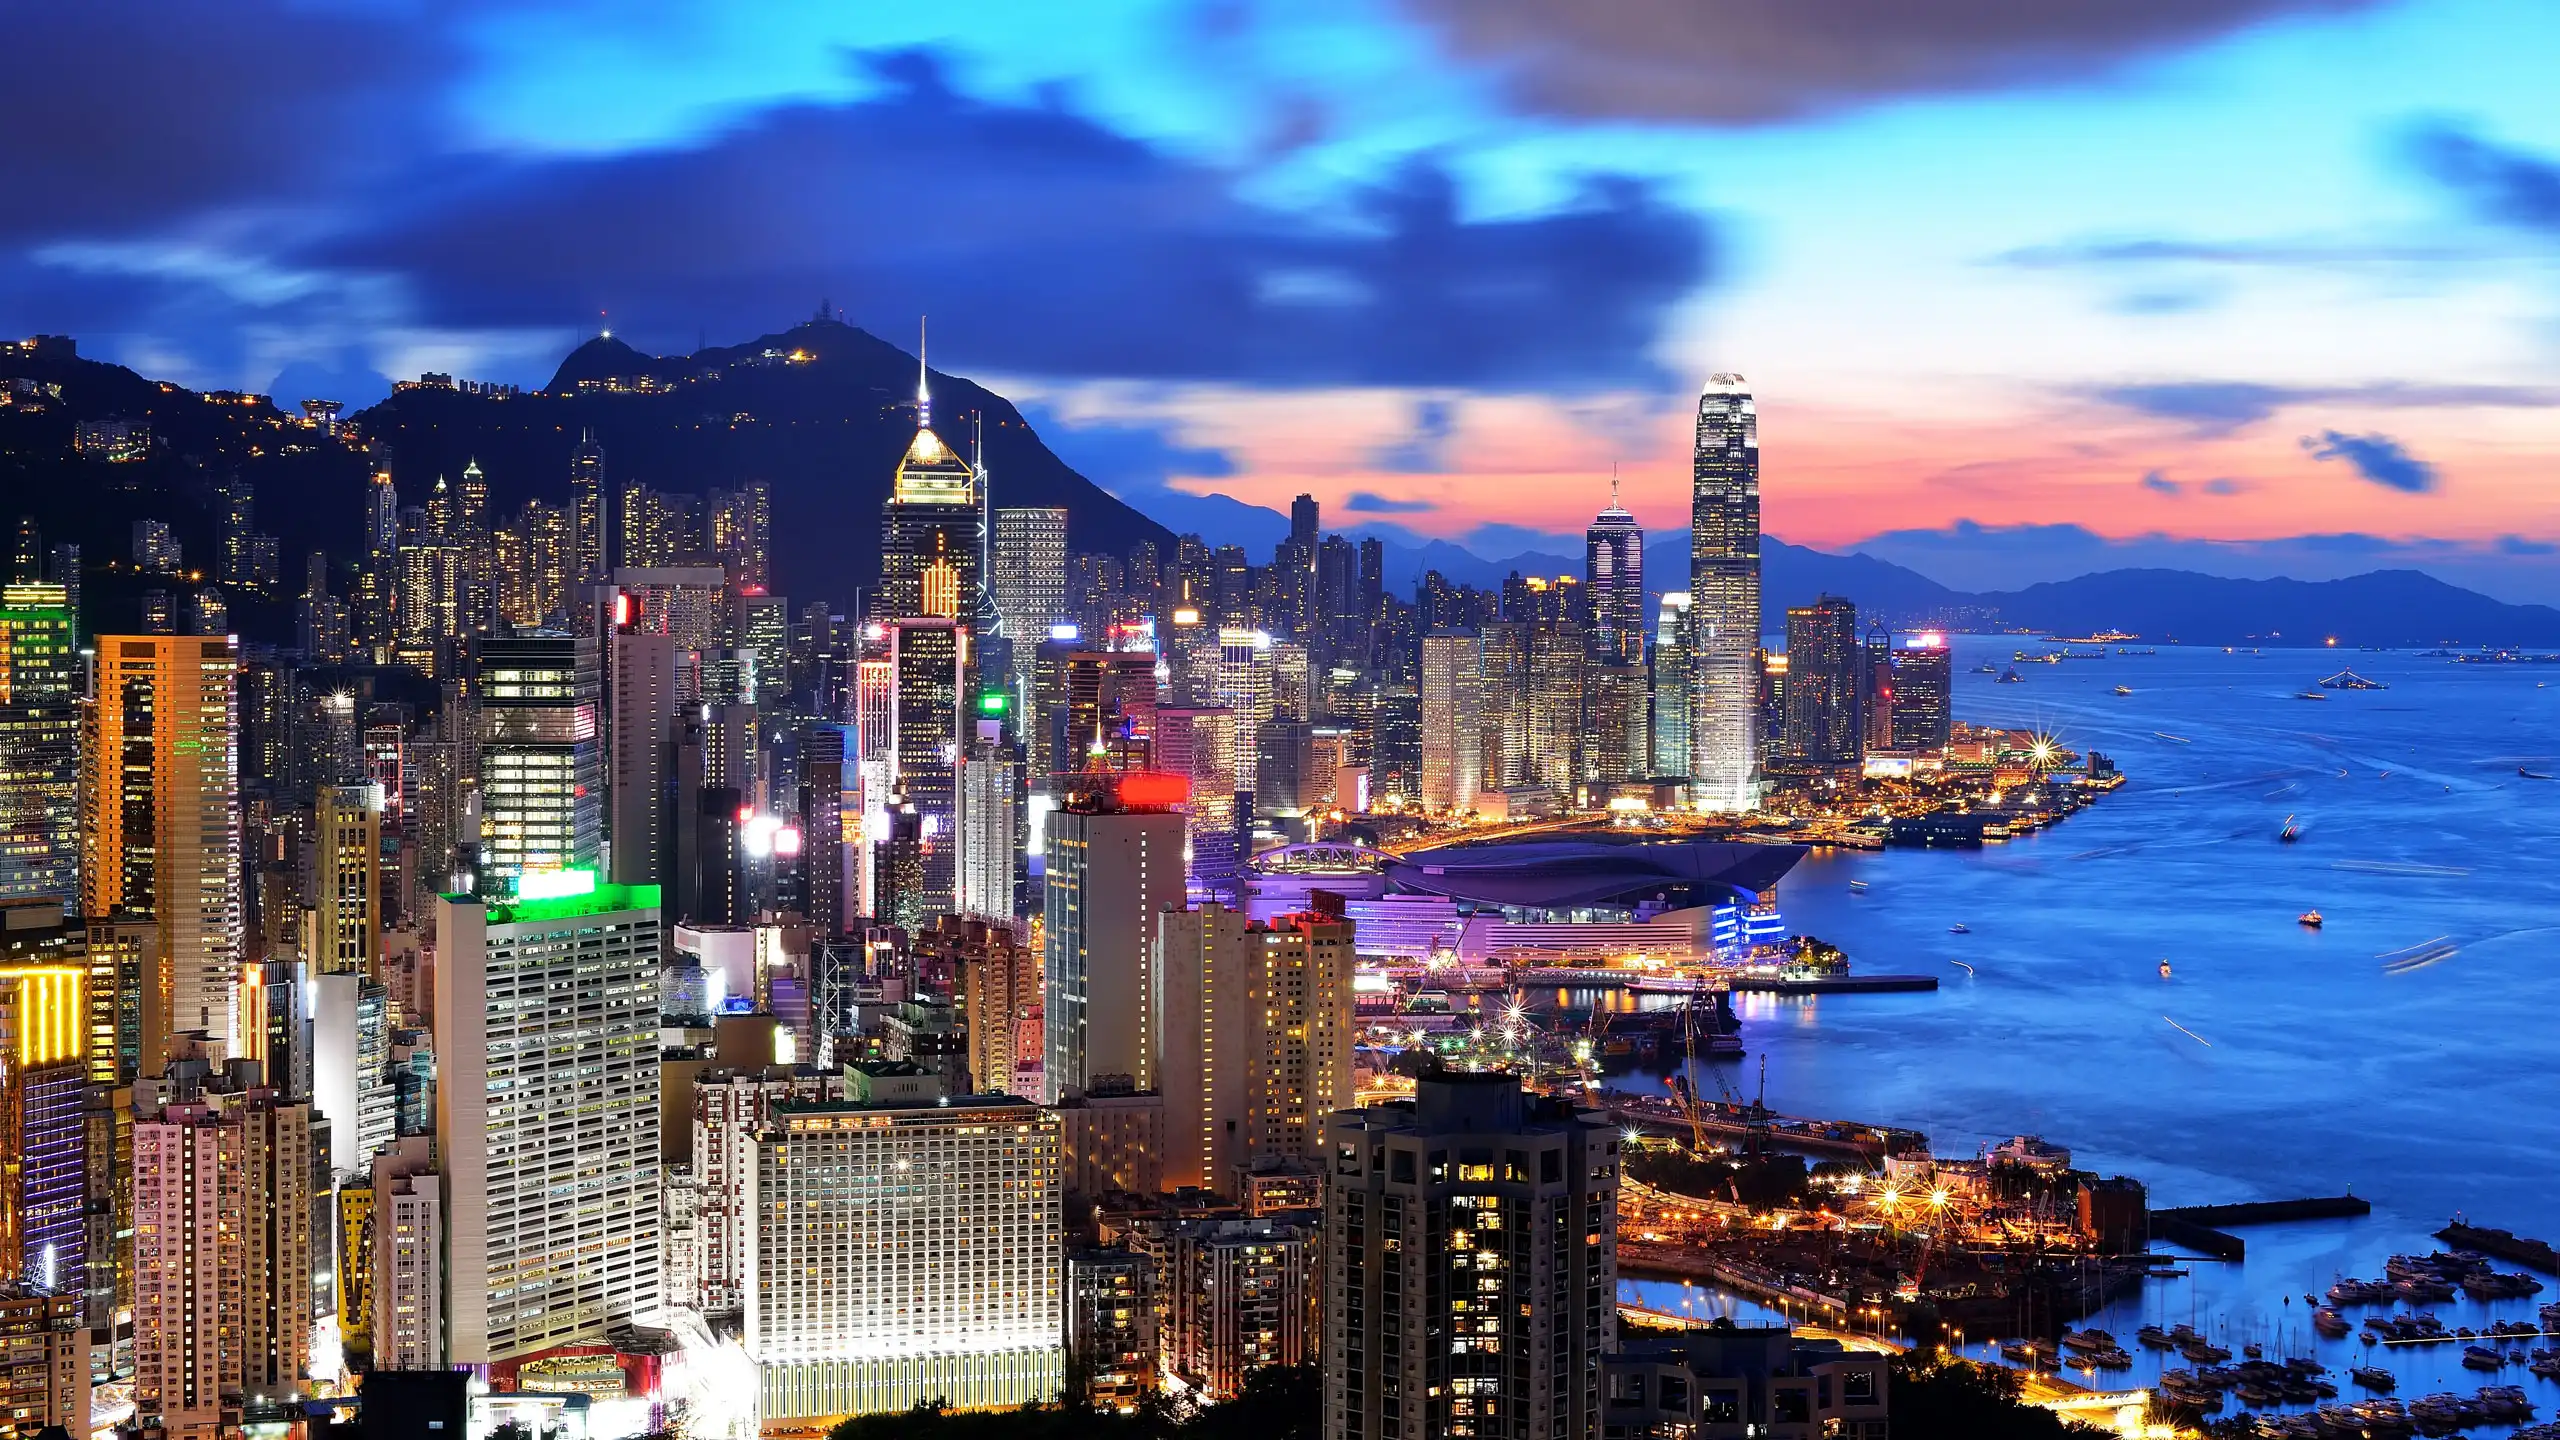 Hong Kong tourism